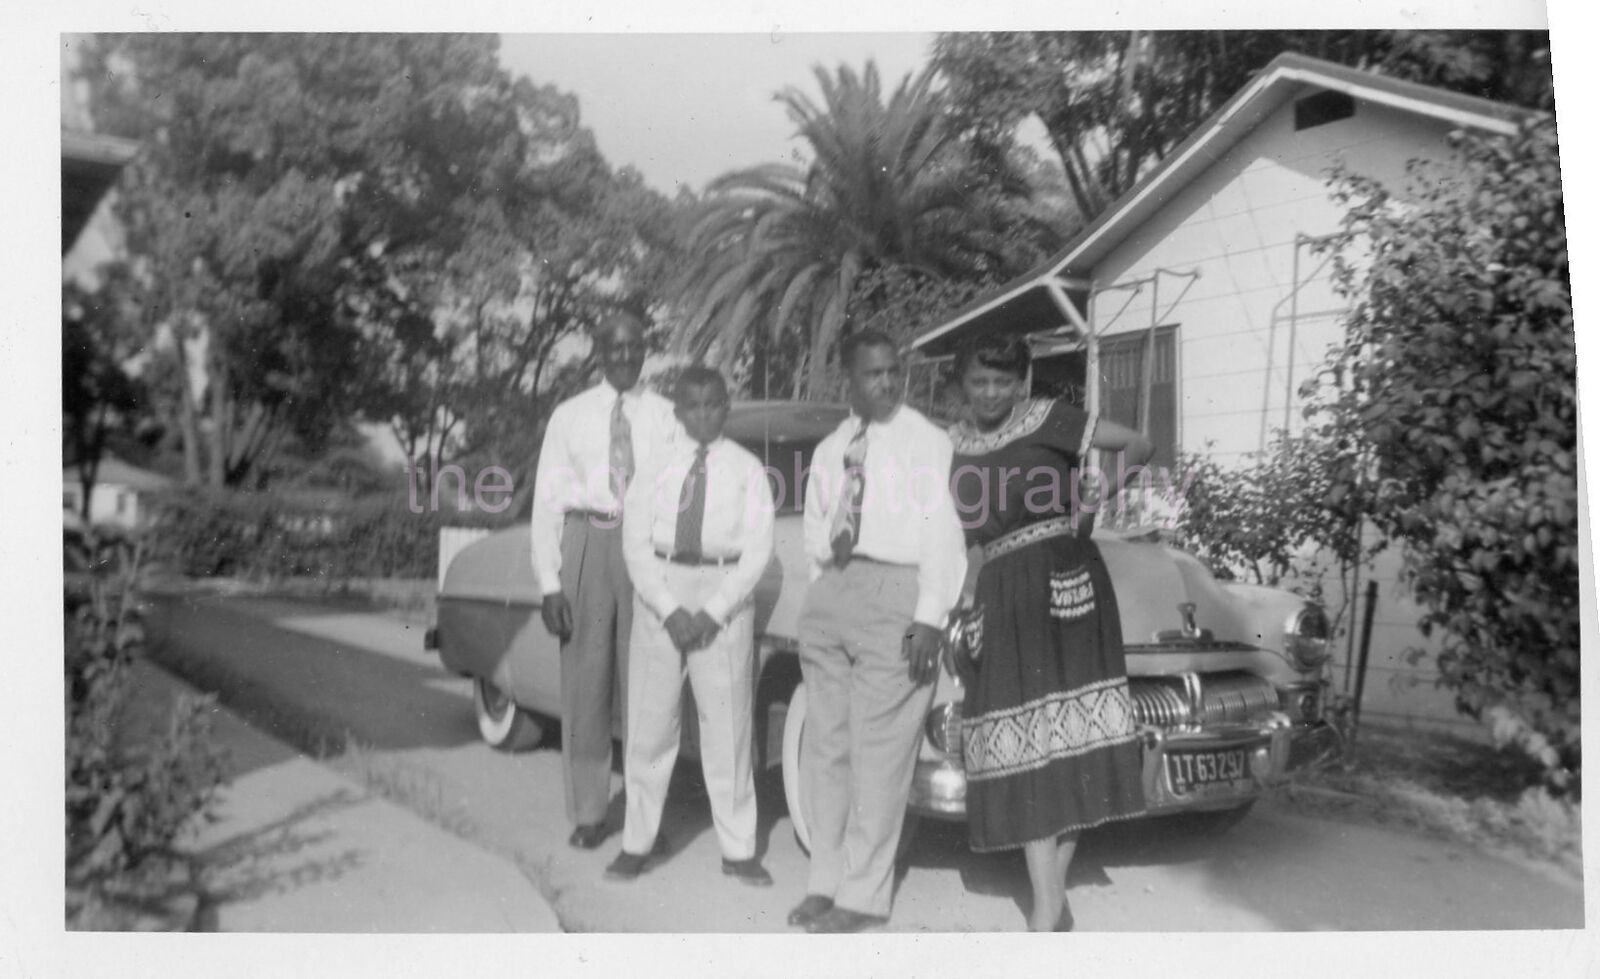 MID 20th CENTURY Vintage FOUND FAMILY PHOTO Black And White Snapshot 43 LA 81 O